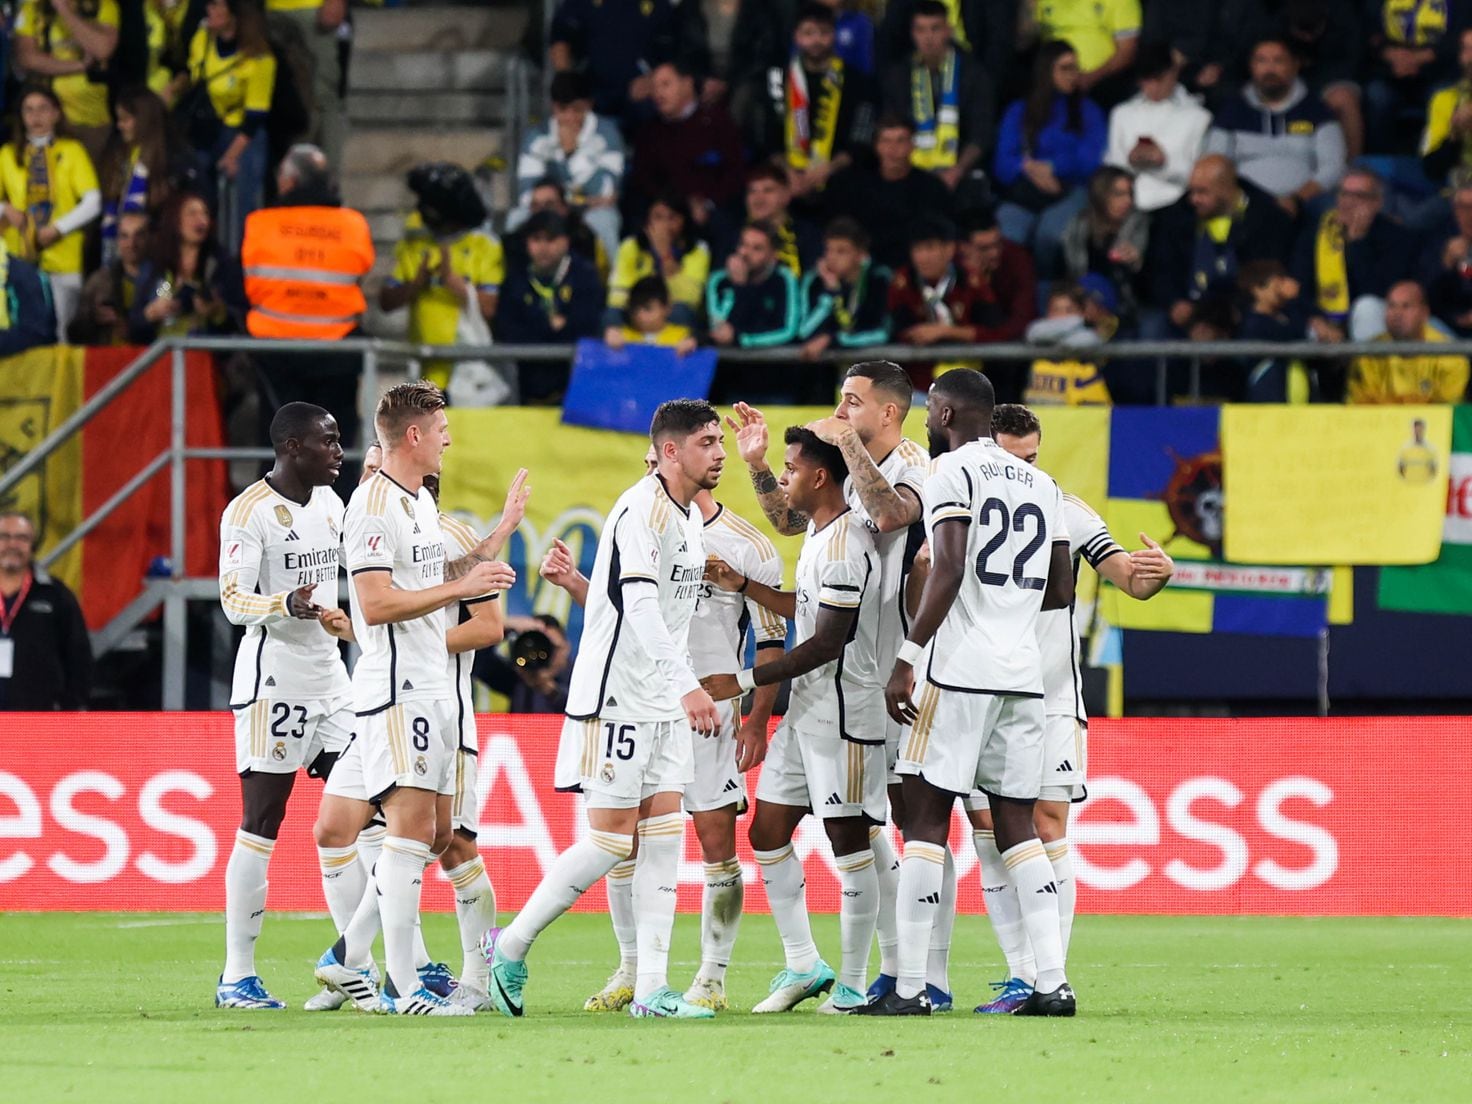 O Jogo do Fenerbahçe: Uma História de Sucesso e Tradição